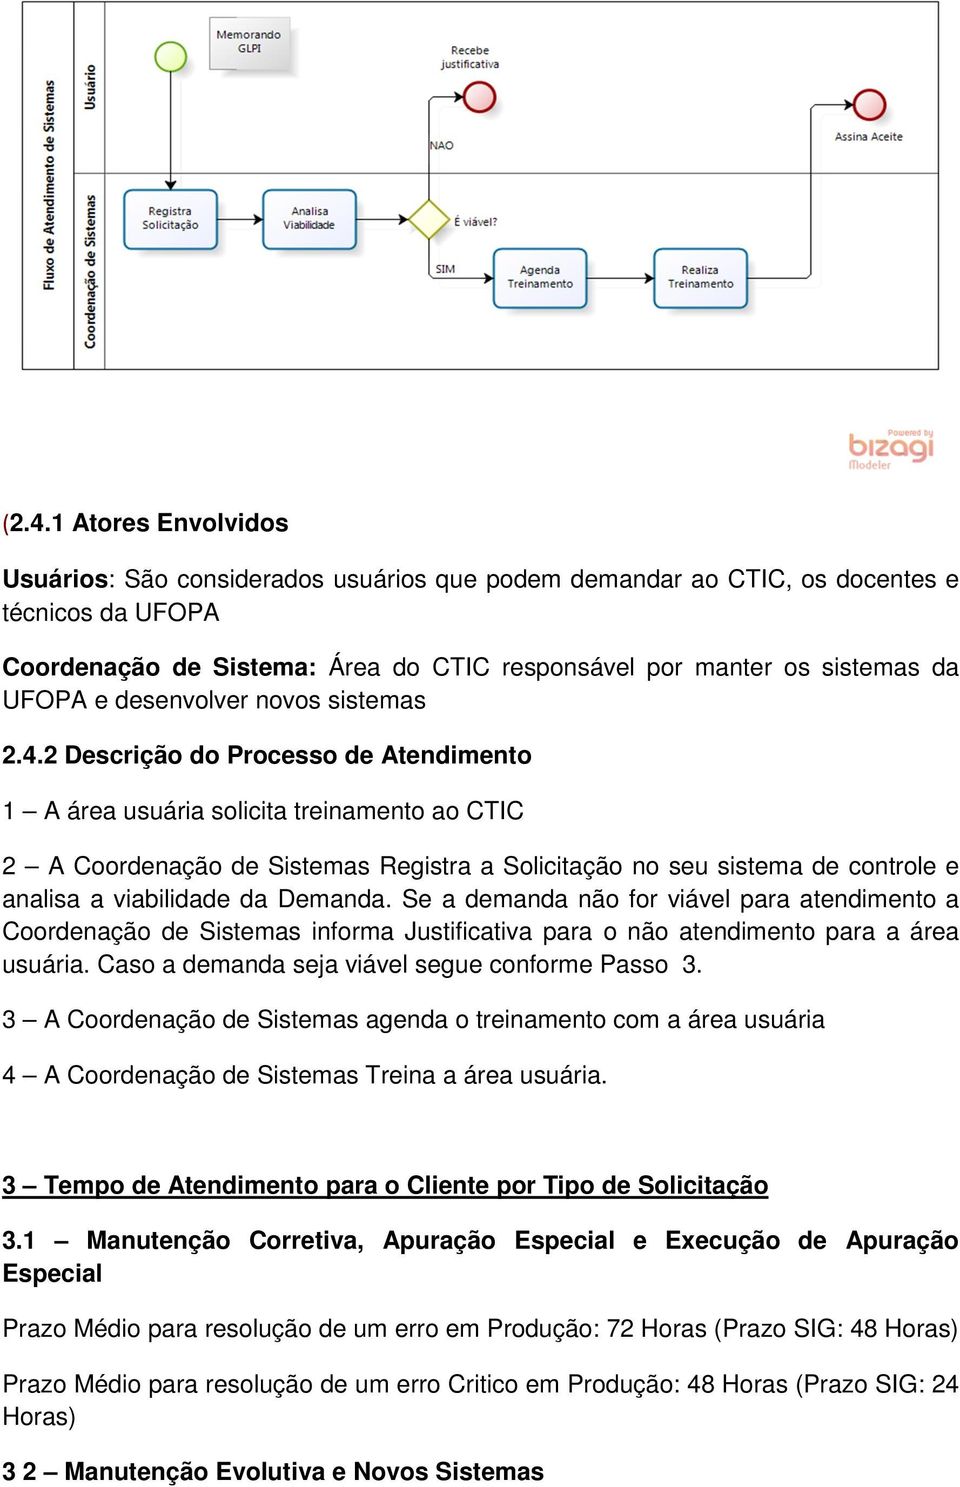 2 Descrição do Processo de Atendimento 1 A área usuária solicita treinamento ao CTIC 2 A Coordenação de Sistemas Registra a Solicitação no seu sistema de controle e analisa a viabilidade da Demanda.